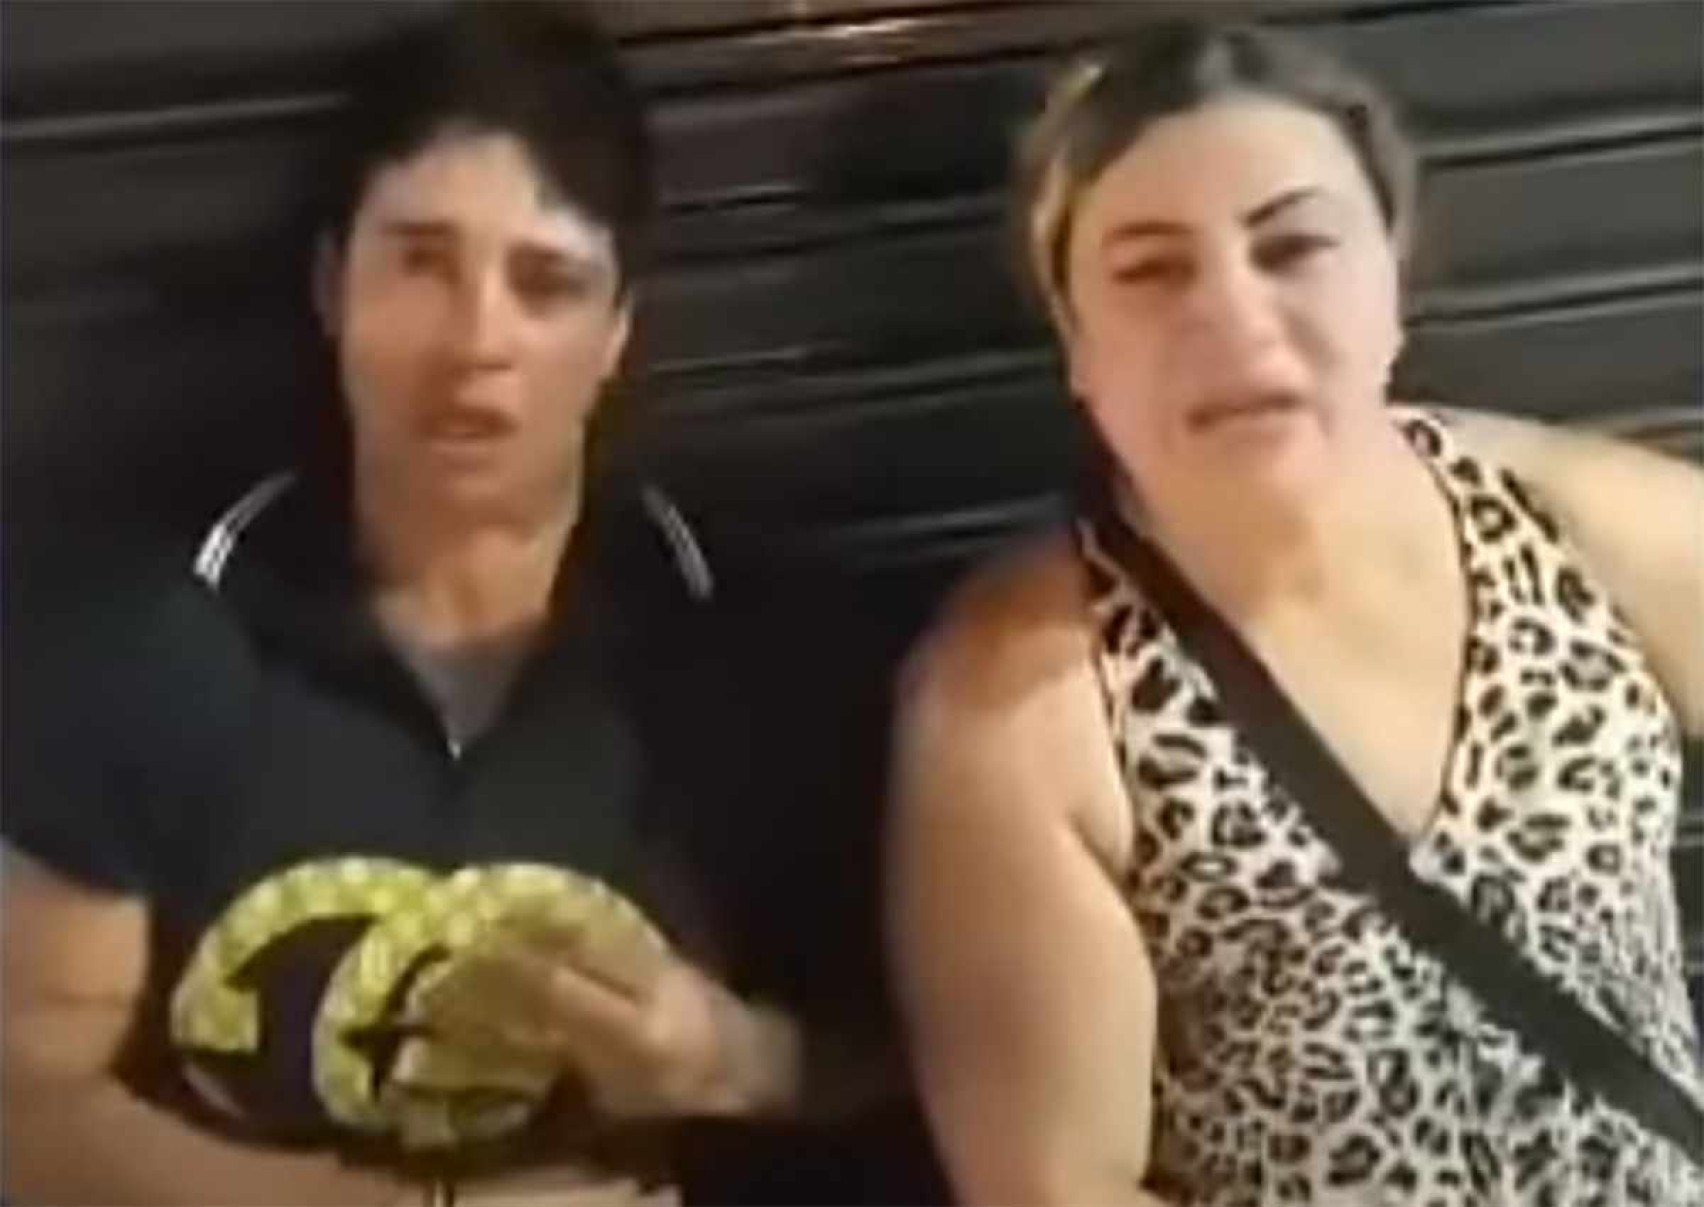 Vídeo mostra mulheres feridas por perseguição homofóbica em Teófilo Otoni